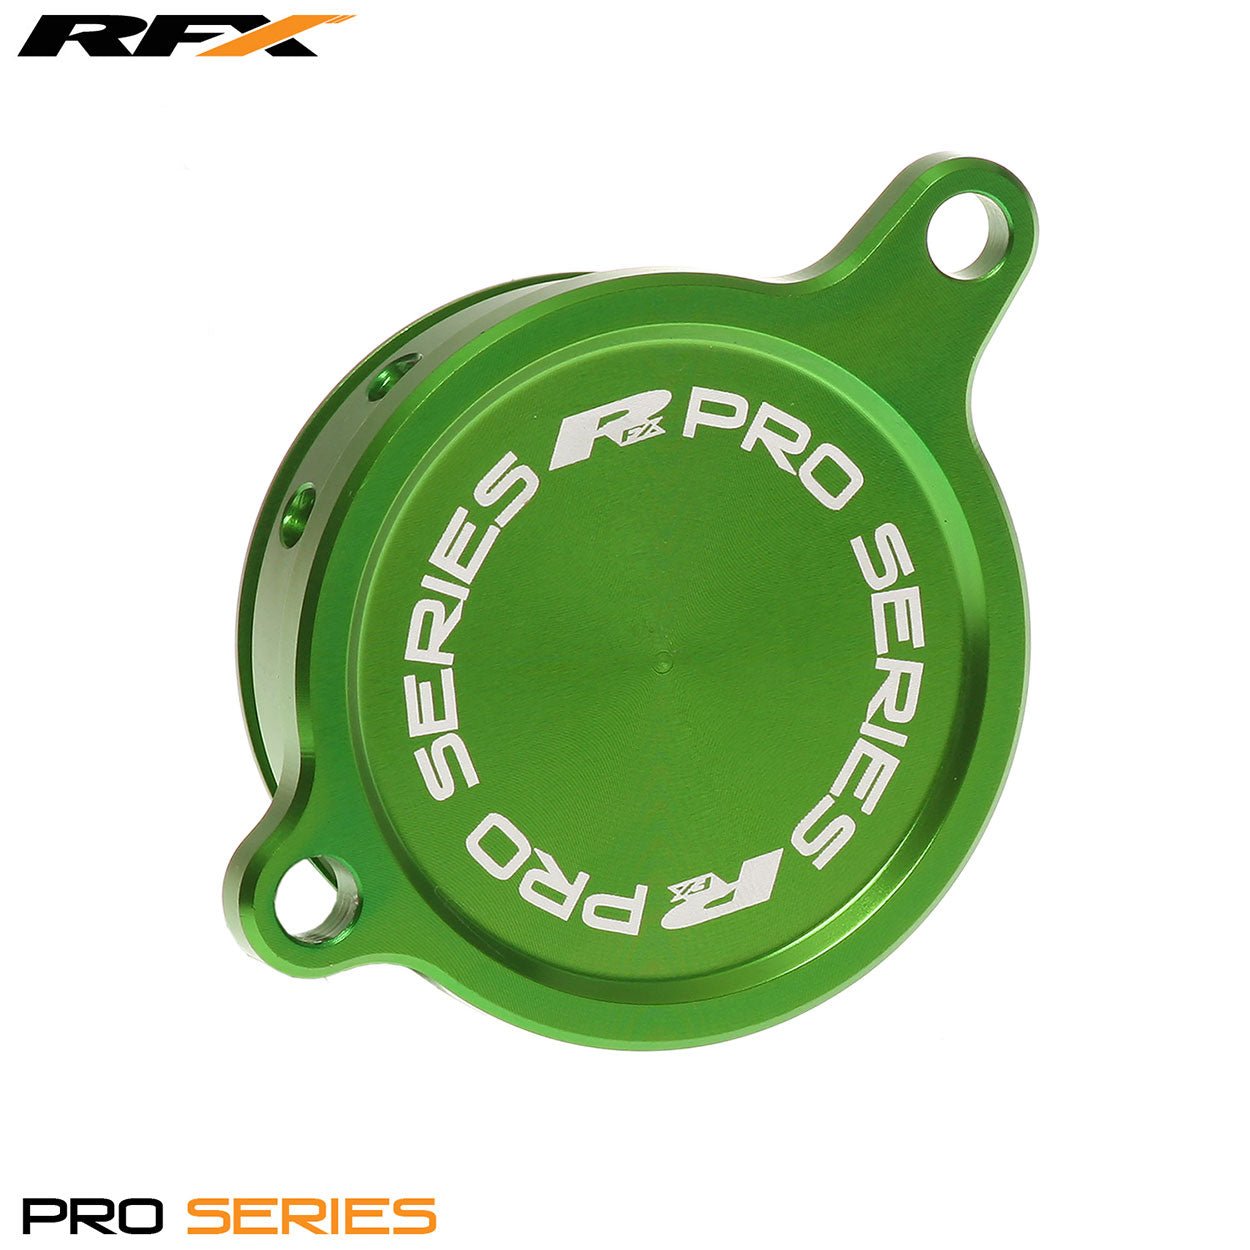 RFX Pro Oil Filter Cover (Green) Kawasaki KXF450 06-15 - Green - RFX